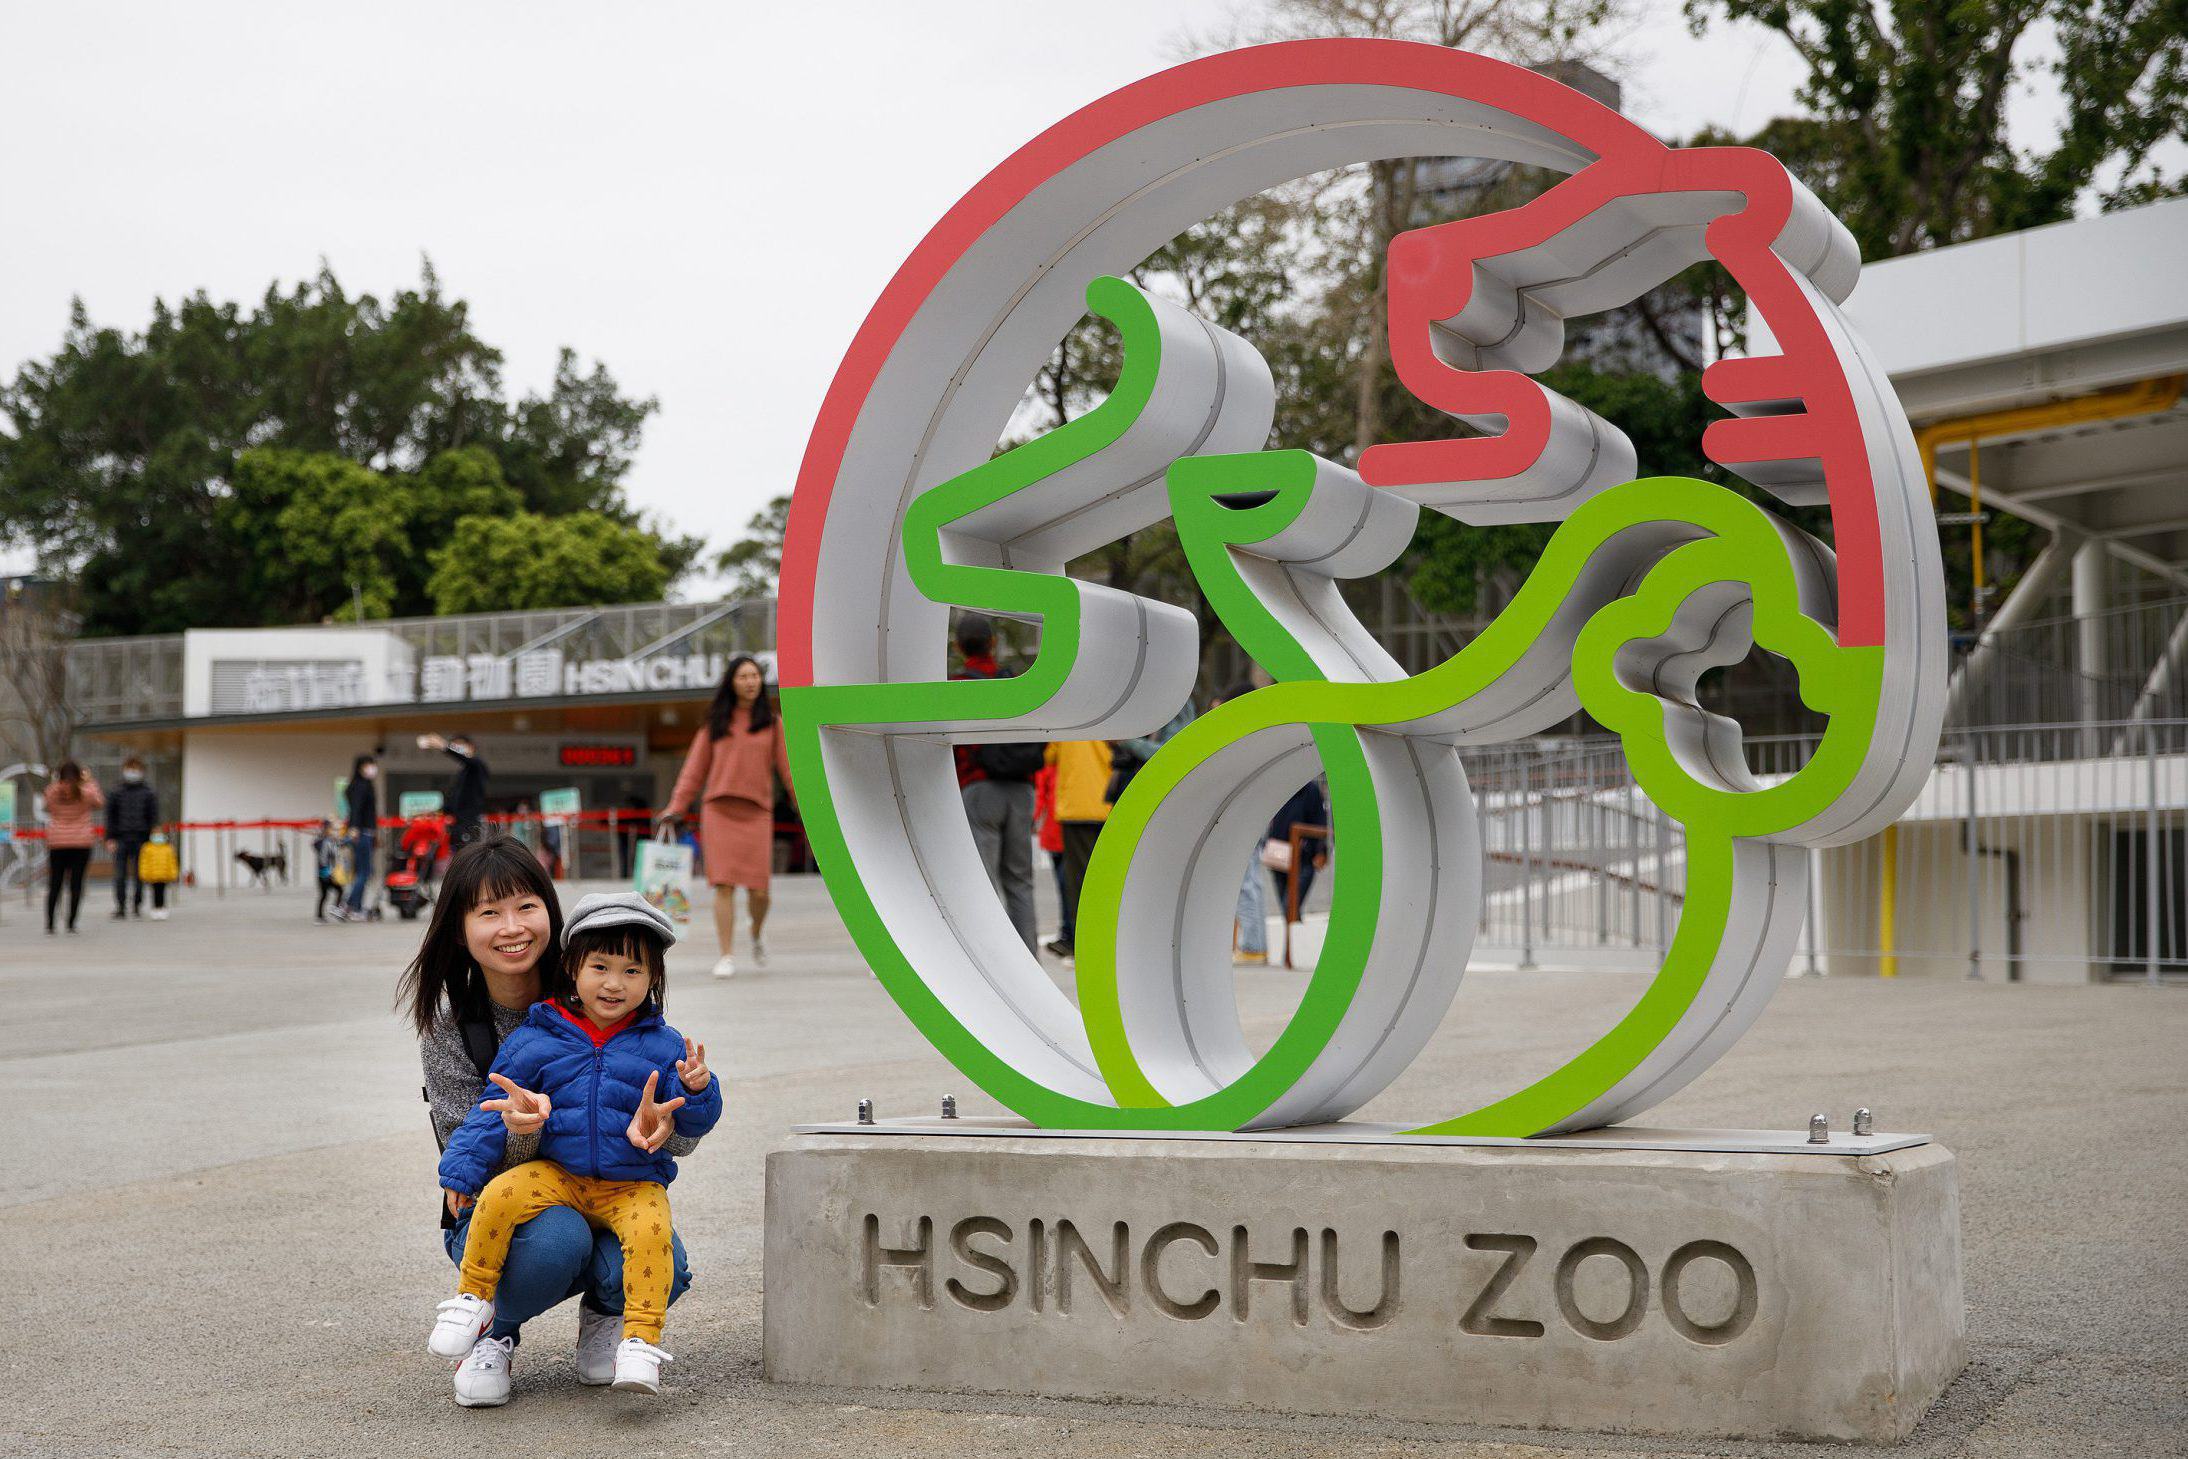 新竹市立動物園 Hsinchu Zoo 親子旅遊 隨拍心得遊記